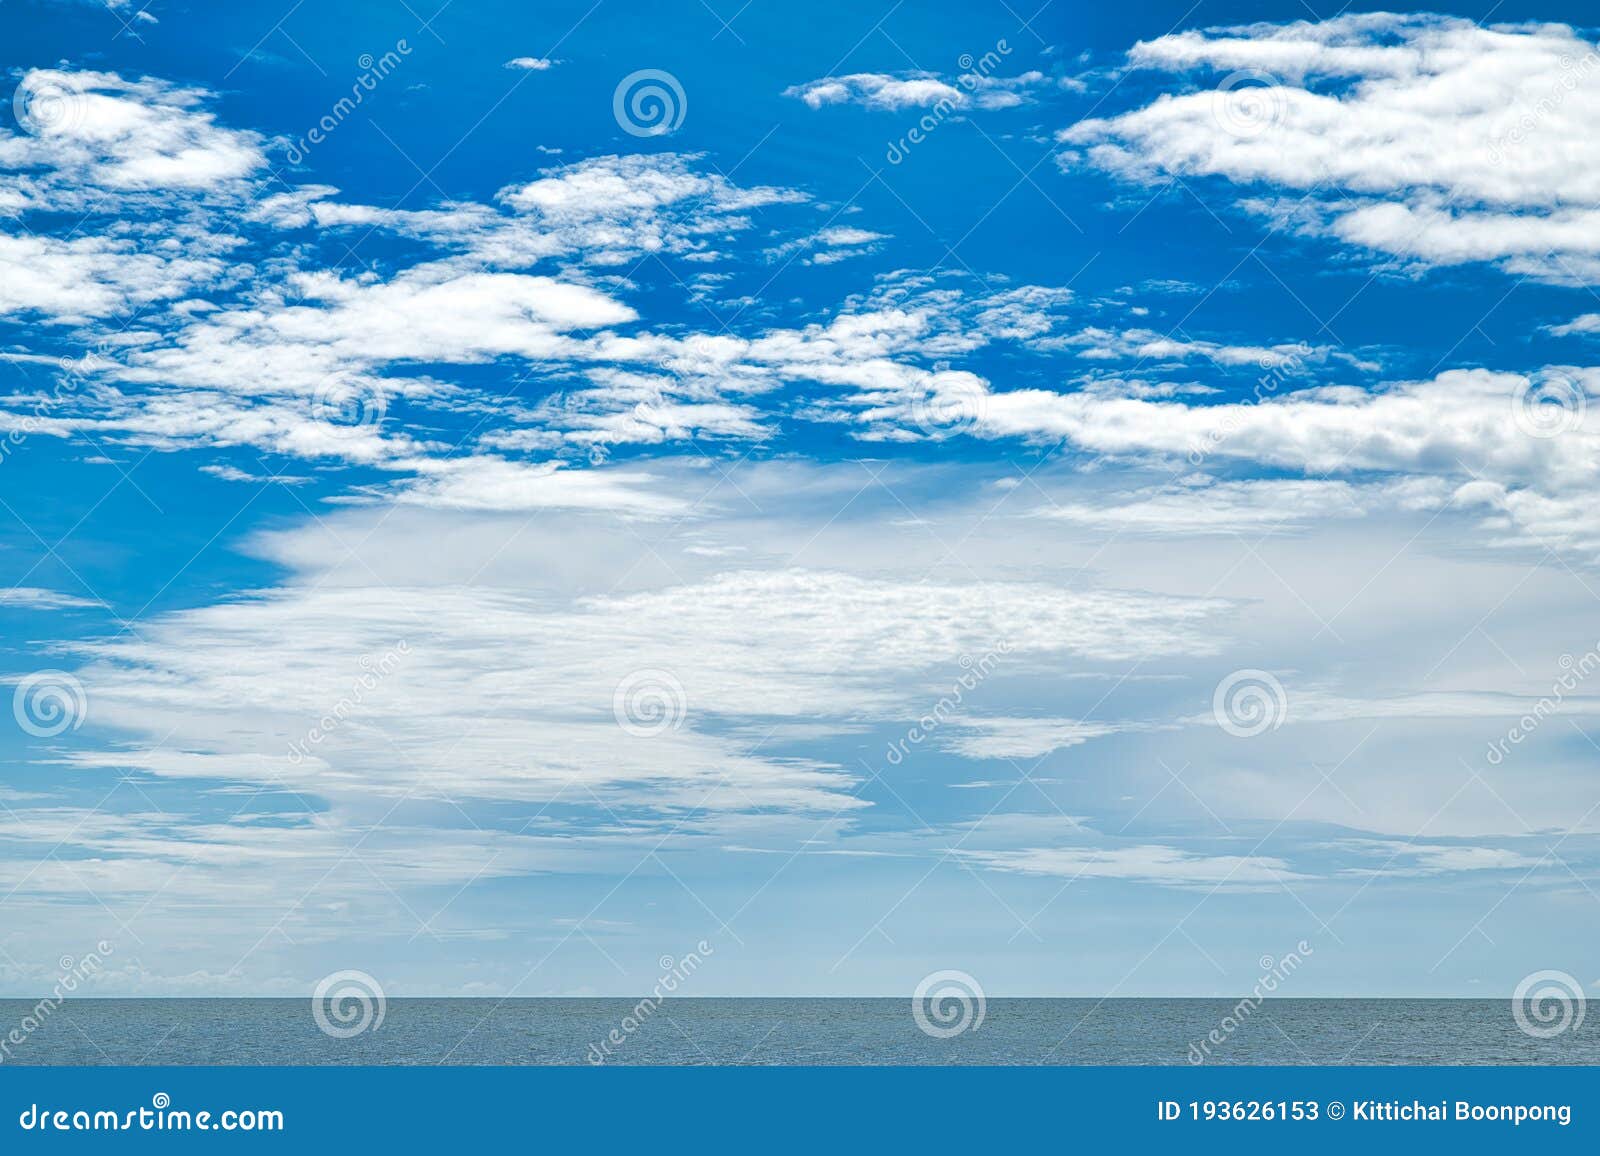 Bầu trời xanh hoàn hảo - Hình ảnh bầu trời xanh hoàn hảo này sẽ khiến bạn muốn tiếp tục ngắm nhìn và không muốn rời mắt. Được chụp vào lúc trời đang xanh ngắt, hòa quyện với tán cây xanh mơn mởn, khung cảnh này chắc chắn sẽ làm cho bạn hài lòng.